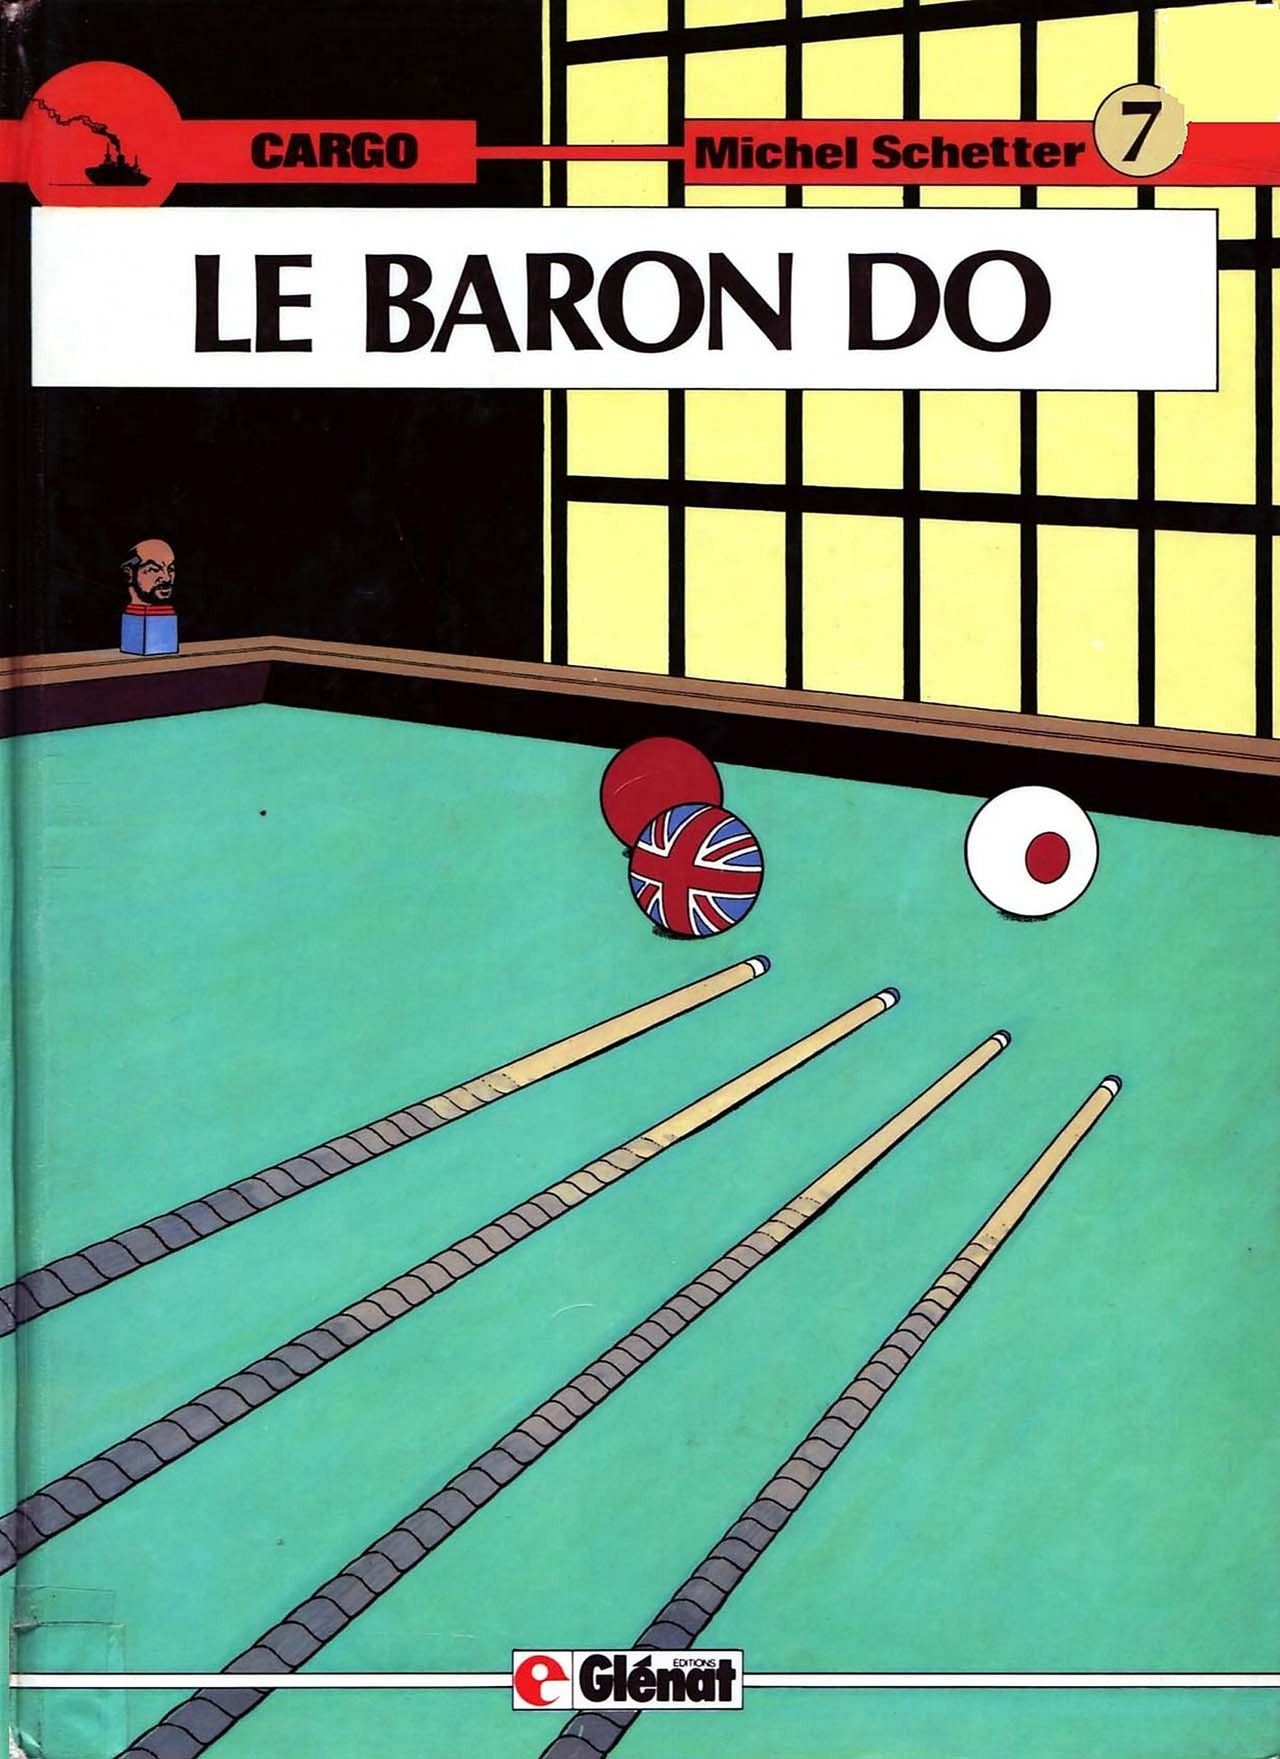 Michel Schetter - Cargo 7 - Le Baron Do